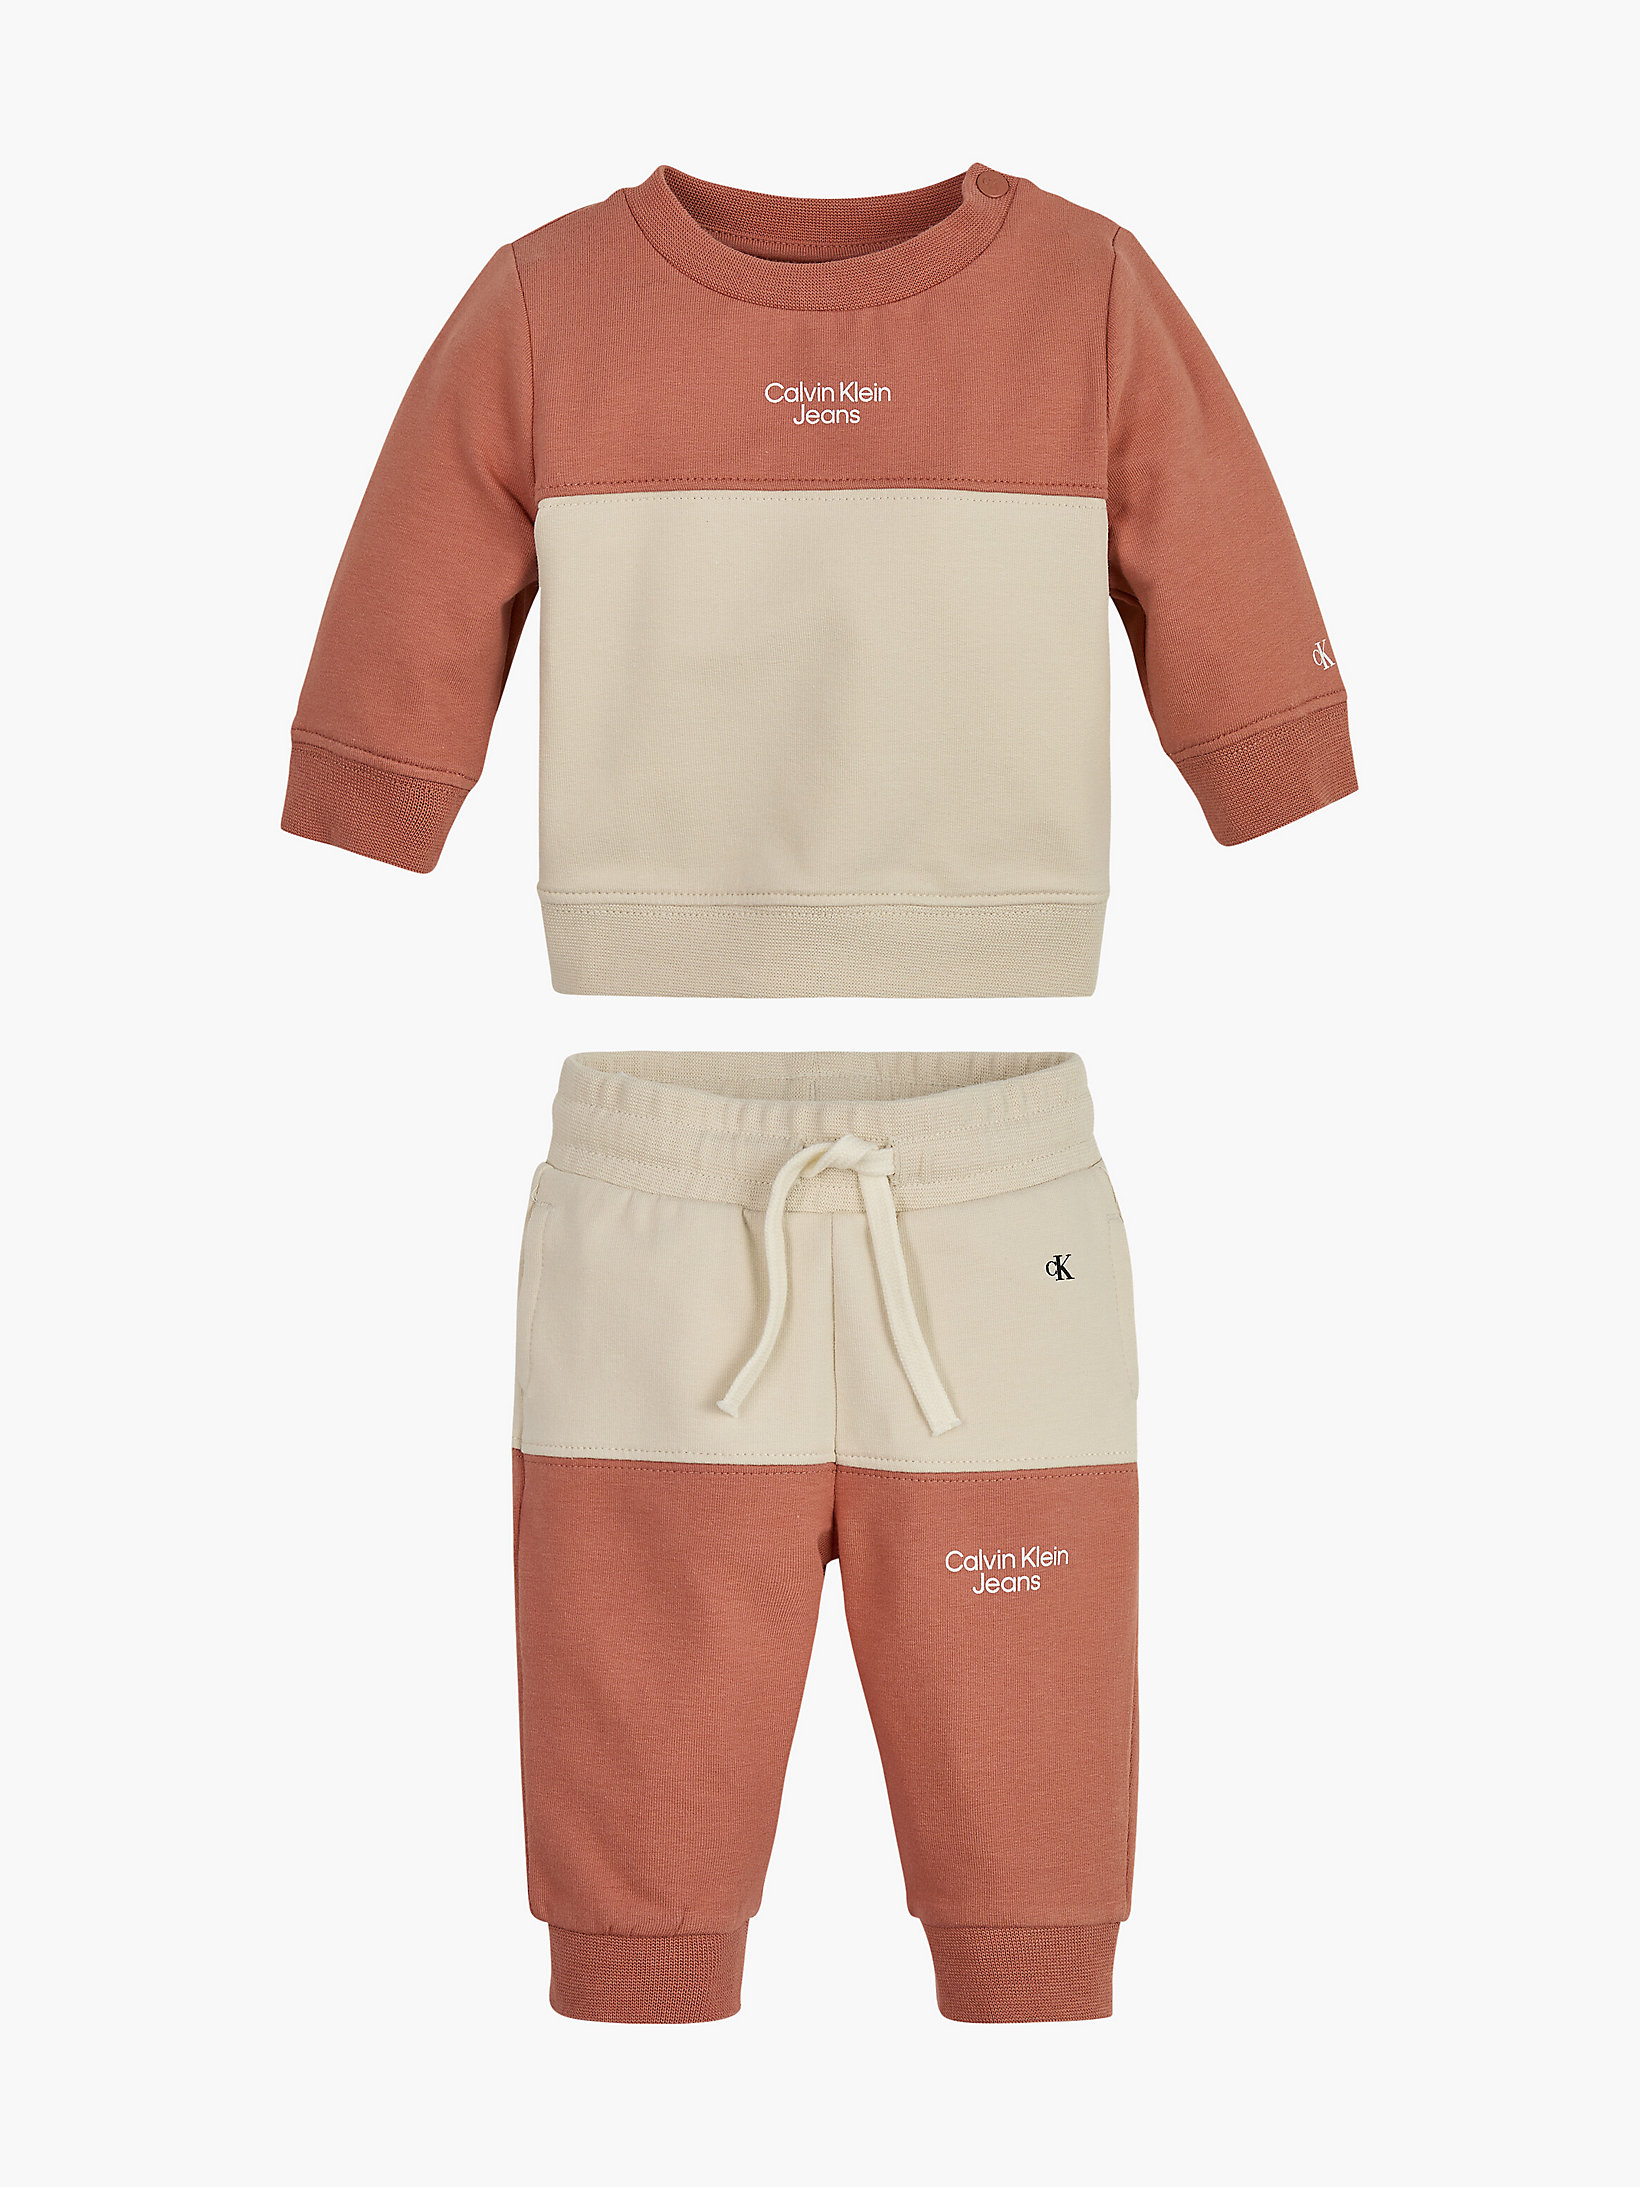 Copper Reef > Спортивный костюм контрастных цветов для новорожденных > undefined newborn - Calvin Klein